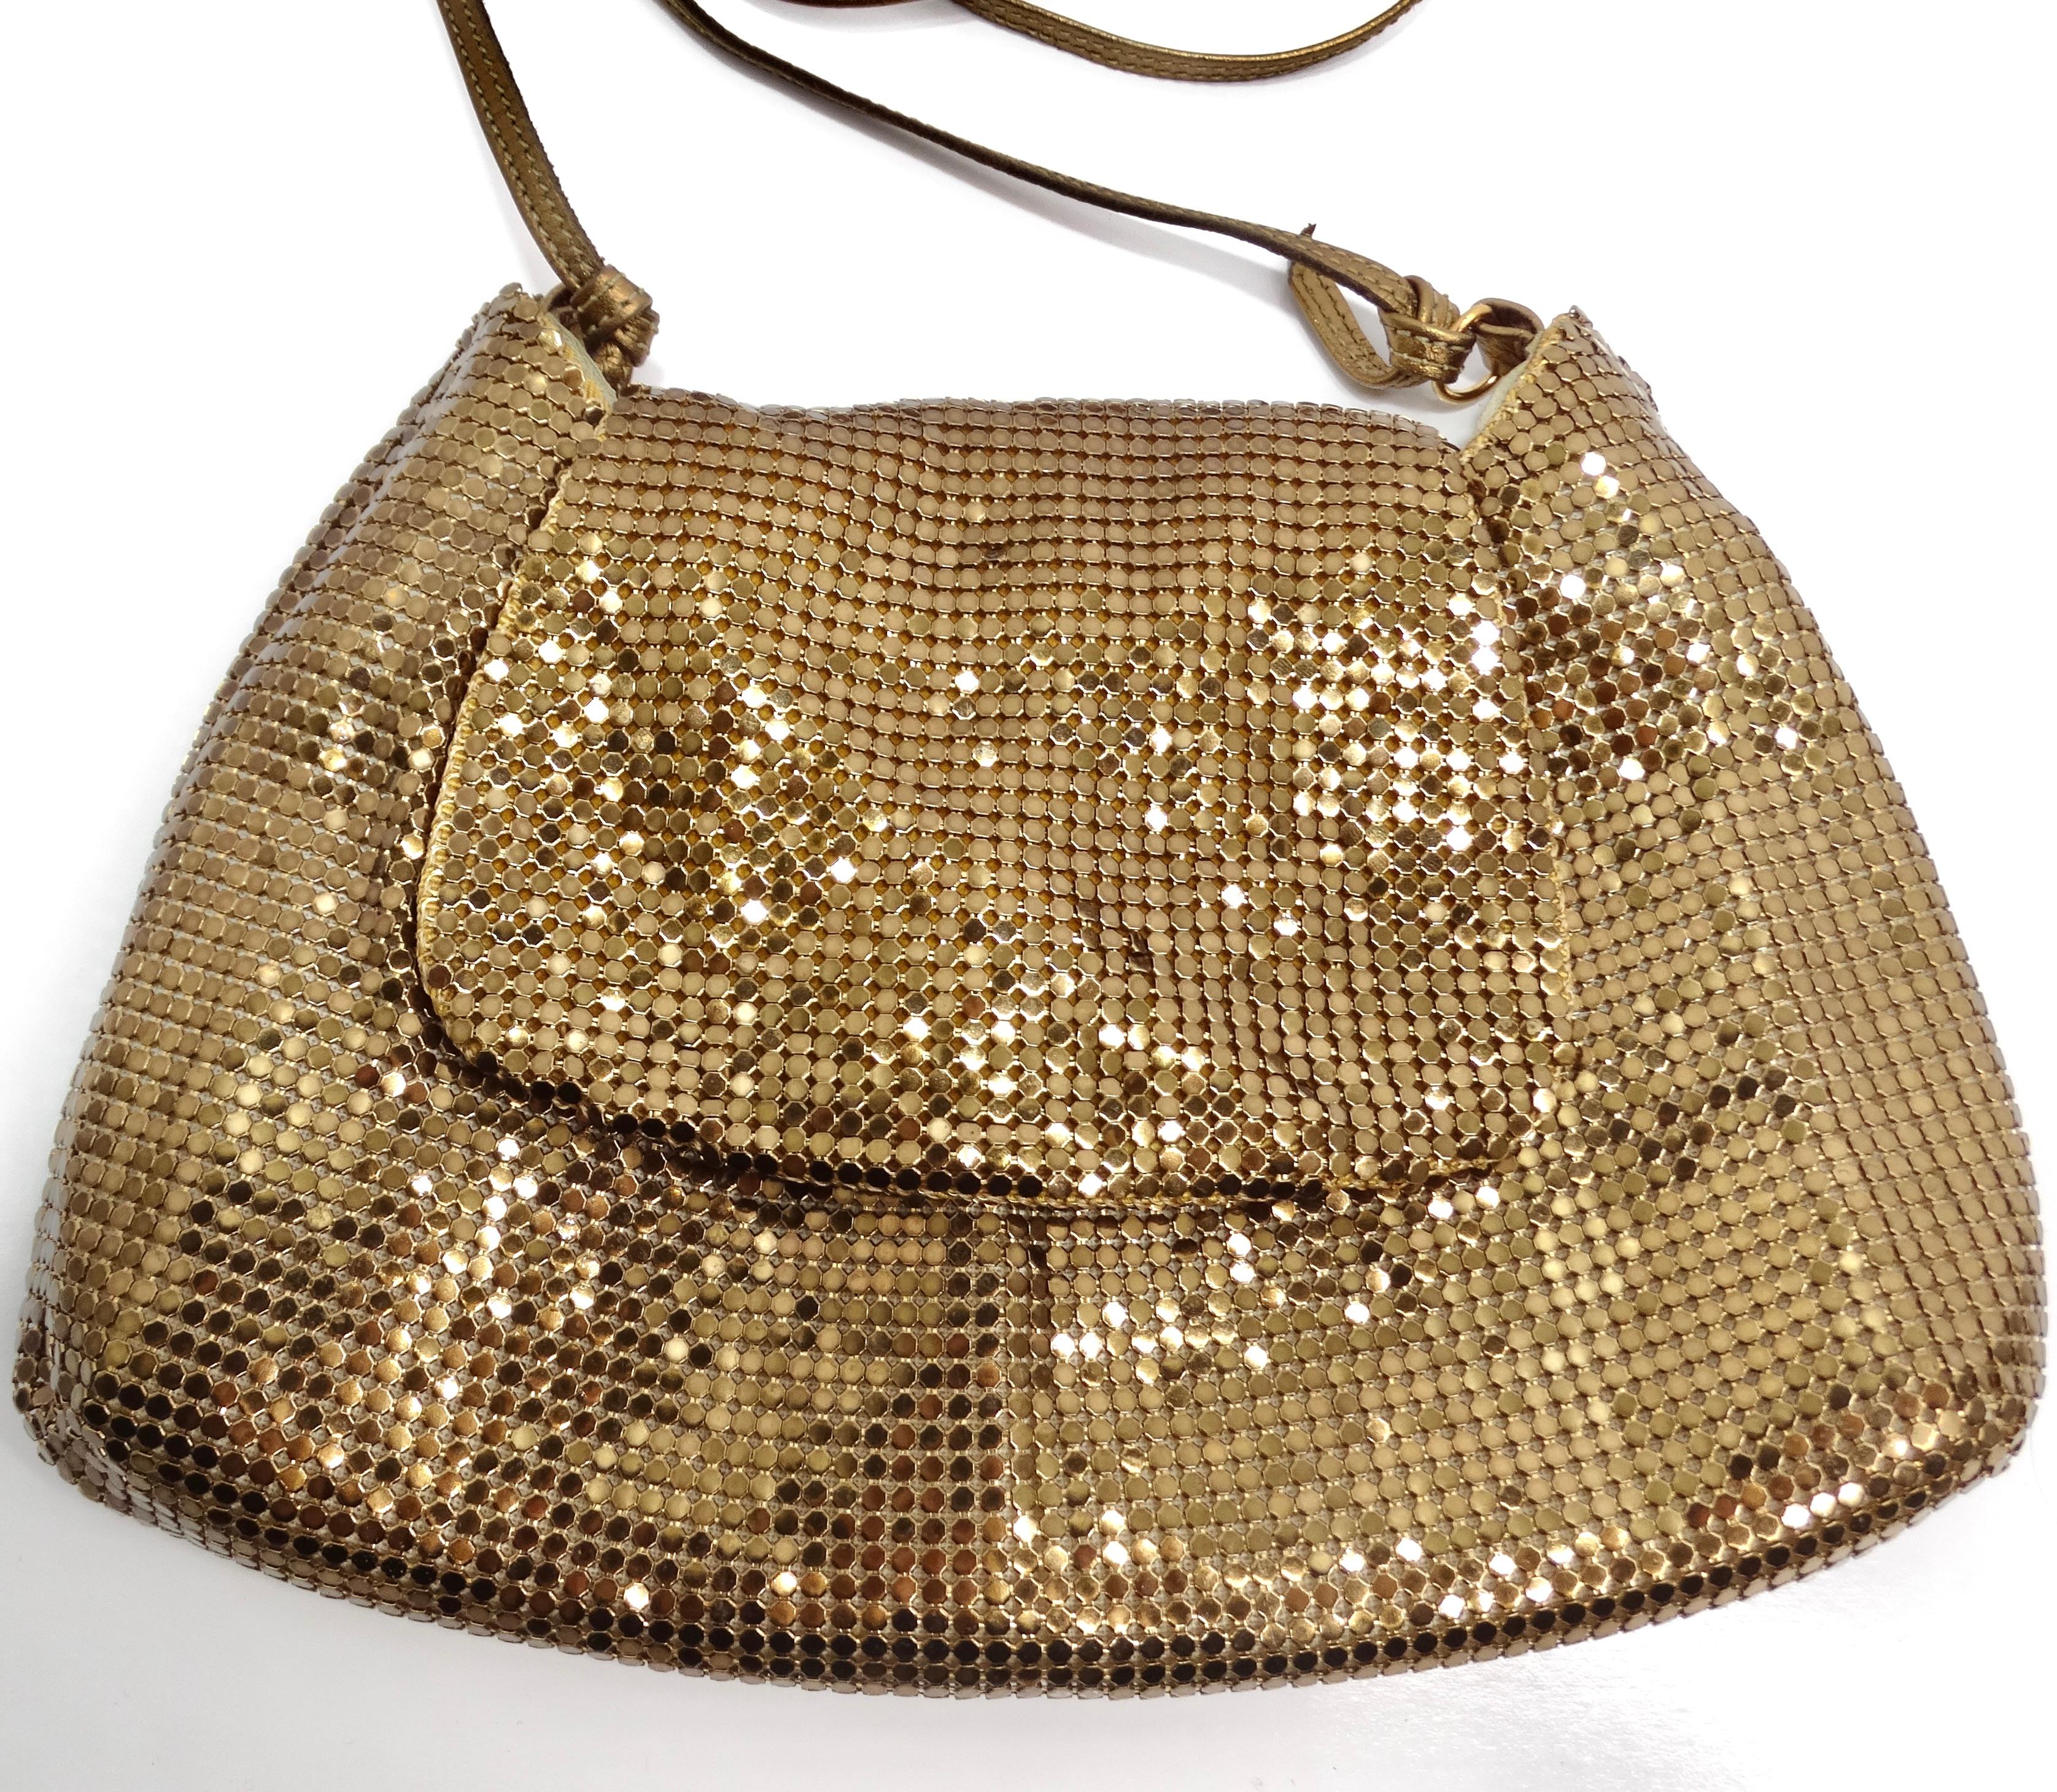 Die Whiting & Davis Gold Tone Chain Mail Crossbody Bag ist ein zeitloses und glamouröses Accessoire, das Vintage-Charme versprüht und Ihren Stil aufwertet. Diese klassische Mini-Tasche mit Überschlag aus goldfarbenem Kettengeflecht verleiht jedem